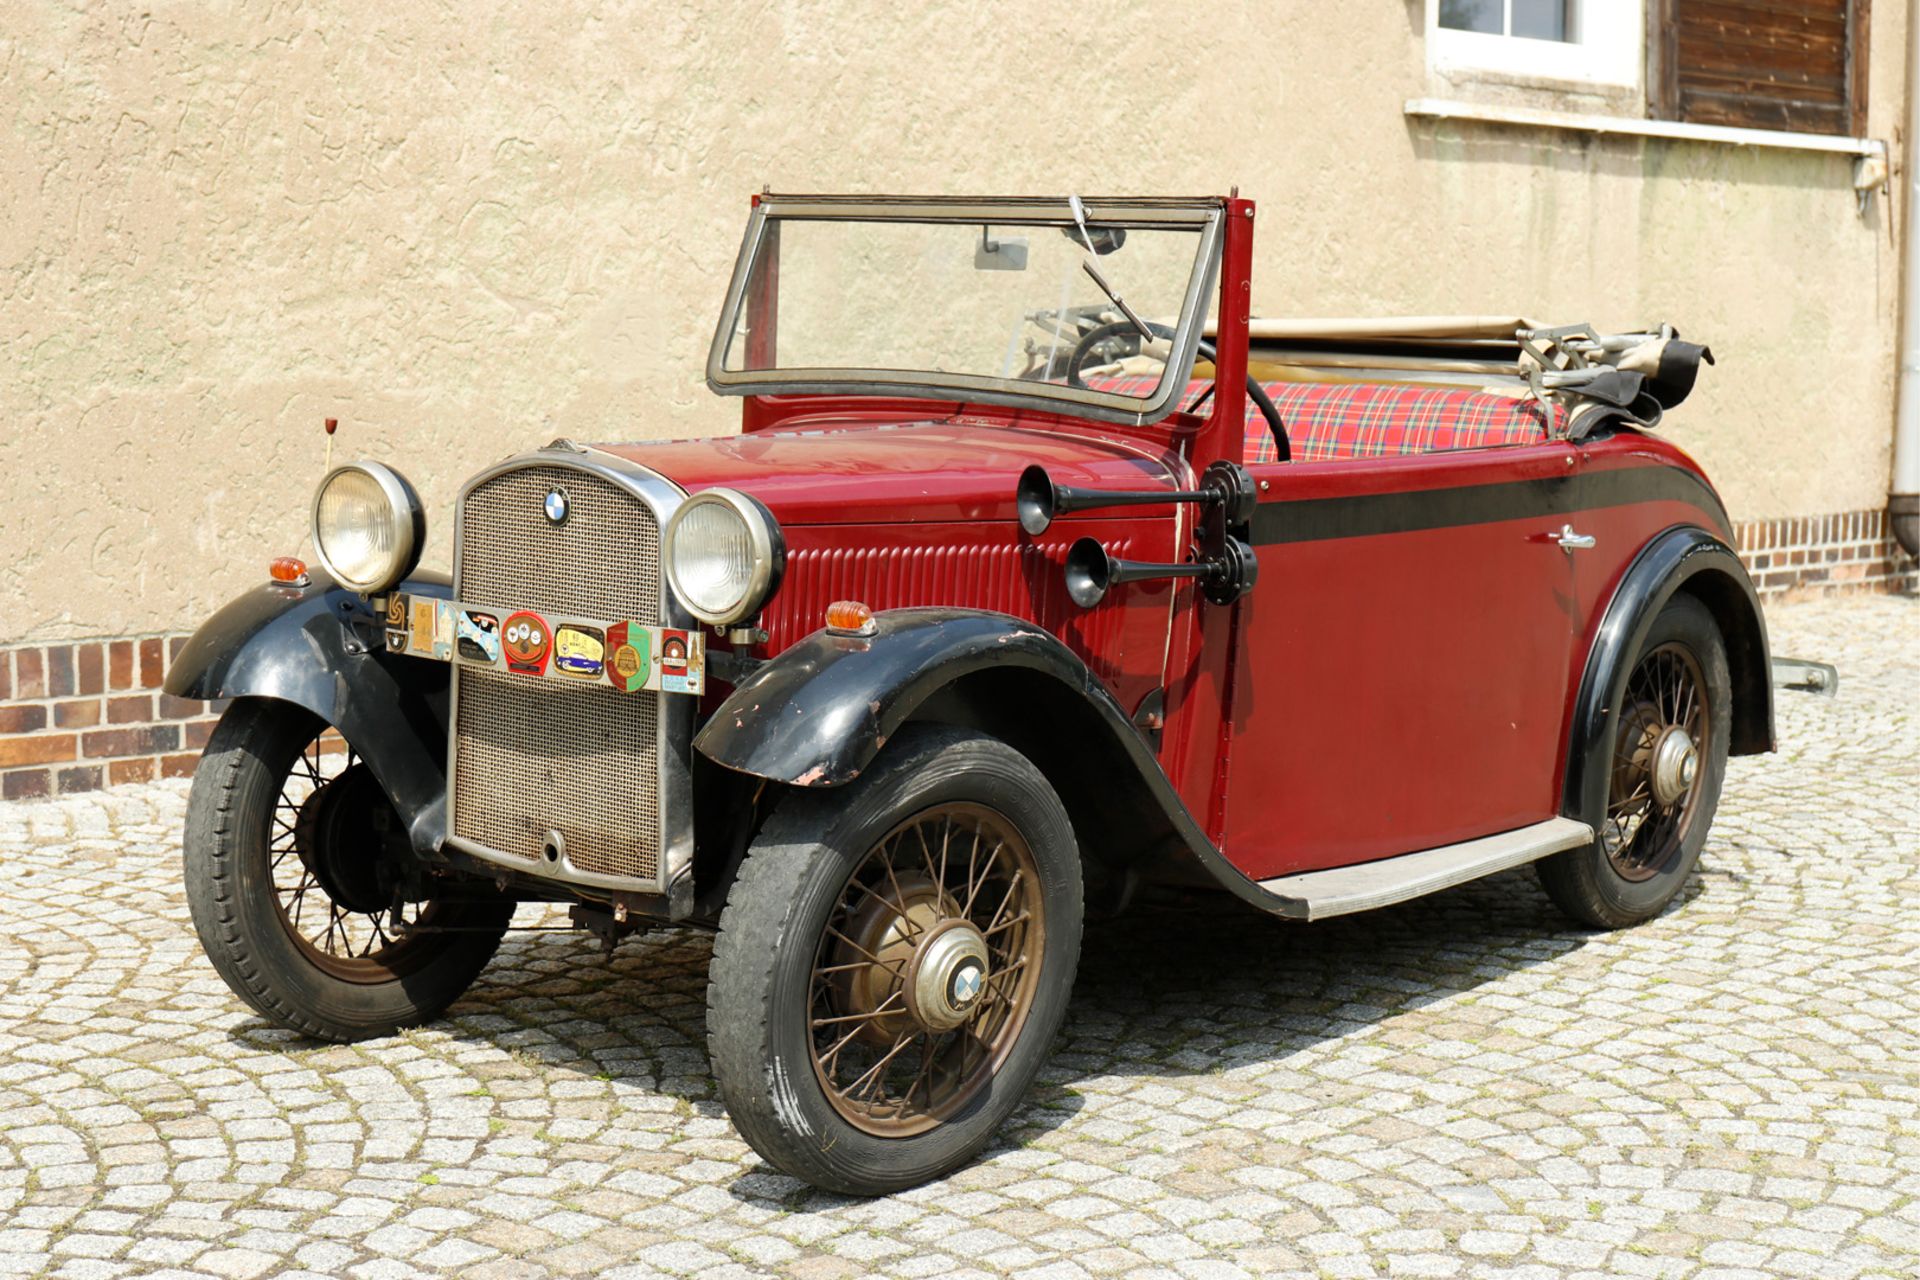 Oldtimer BMW Cabriolet 1933 AM 4 / 33442, ccm 782, PS 20/3500, 4 Zylinder, Stahlkarosserie, gefertig